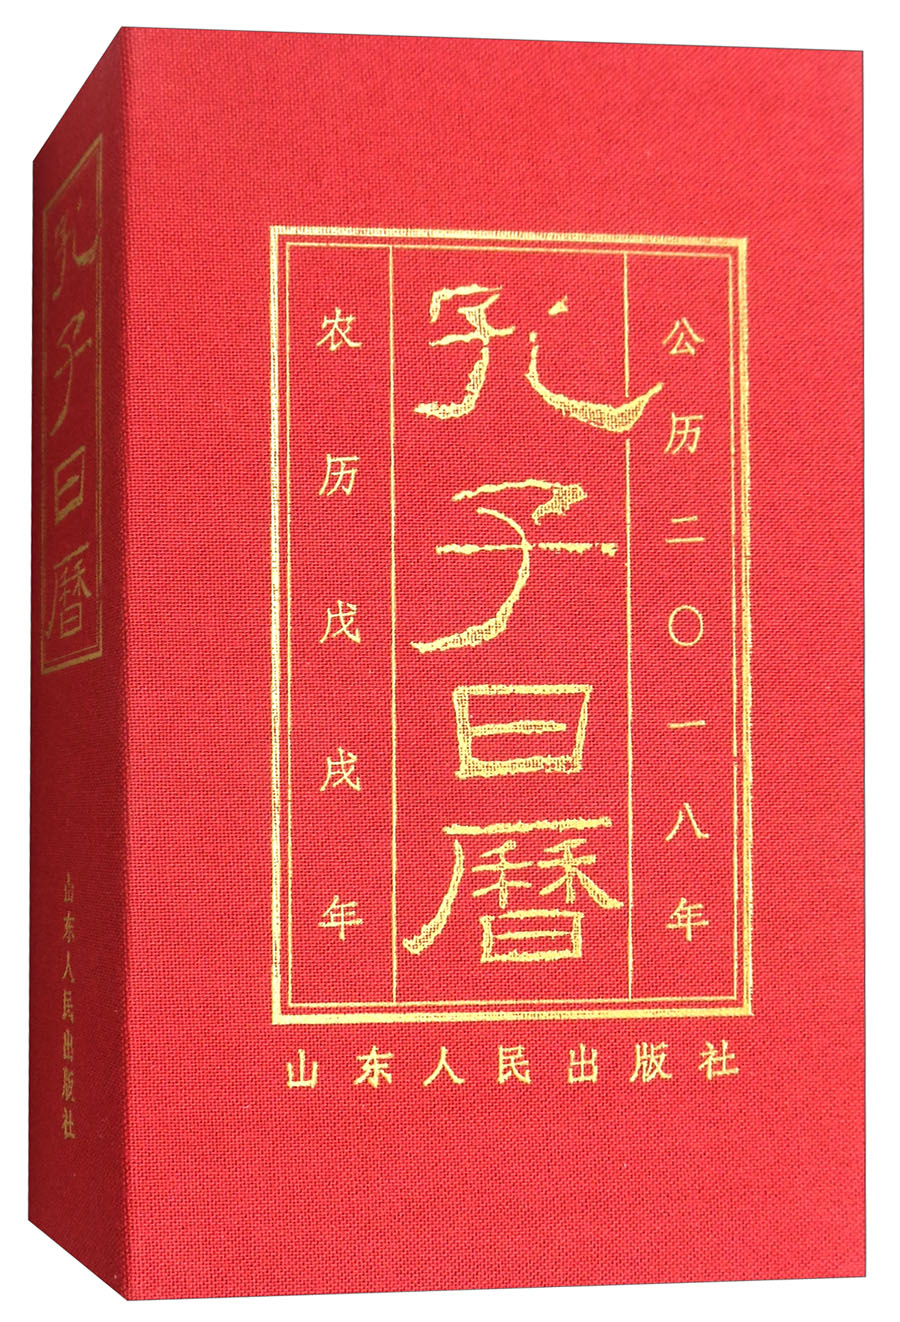 孔子日历（公历2018年 农历戊戌年） kindle格式下载